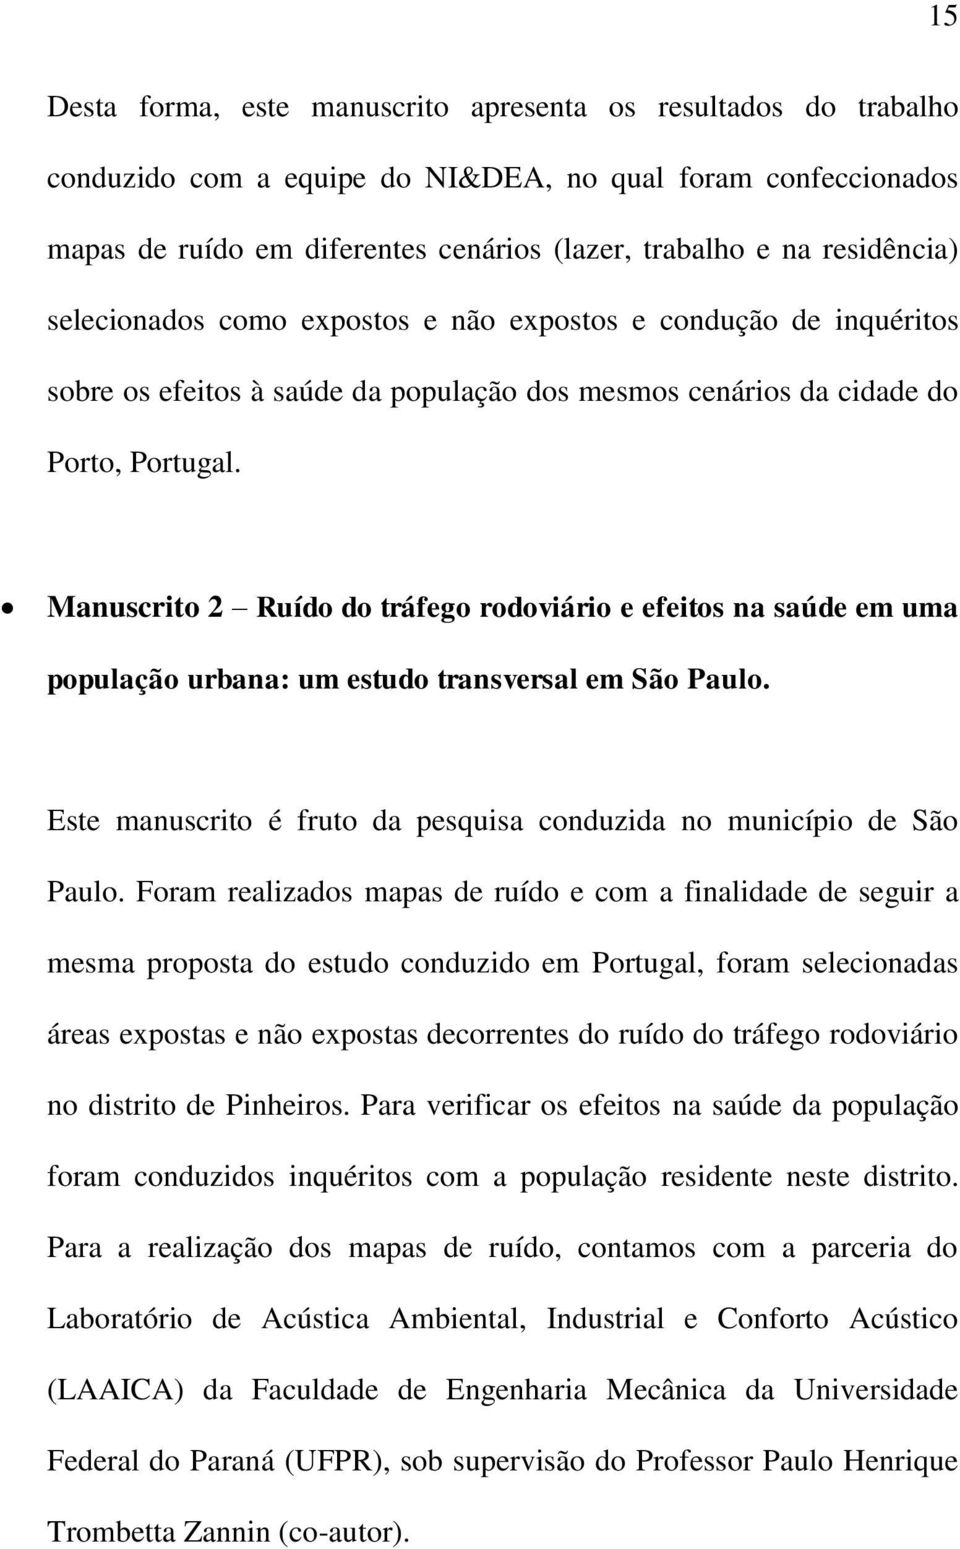 Manuscrito 2 Ruído do tráfego rodoviário e efeitos na saúde em uma população urbana: um estudo transversal em São Paulo. Este manuscrito é fruto da pesquisa conduzida no município de São Paulo.